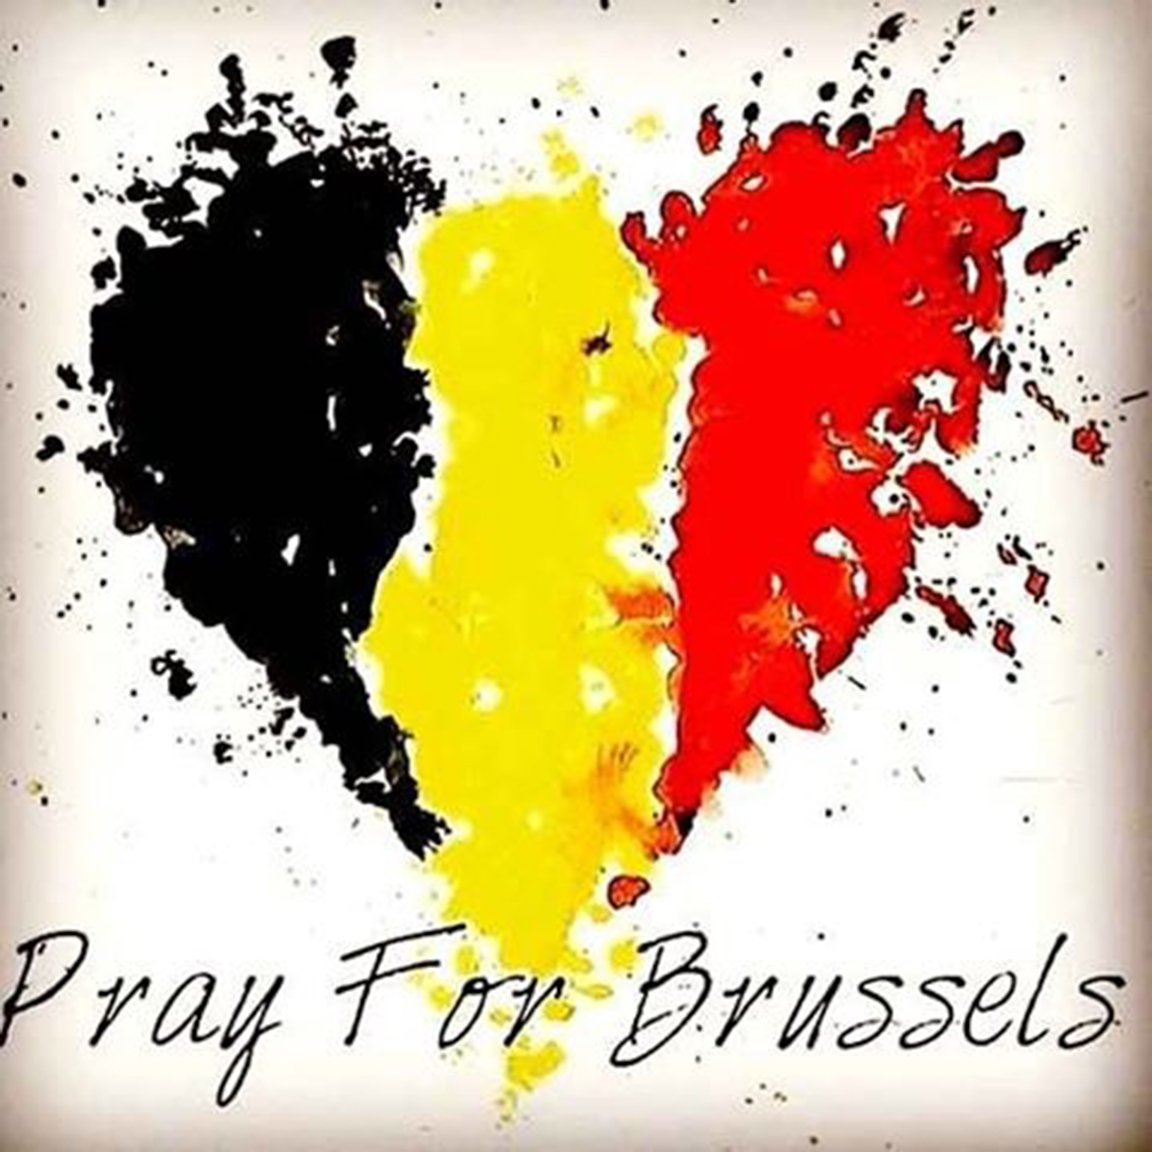 Sending love & prayers to the people of Belgium. #prayforbrussels https://t.co/TP6Iho64Fl